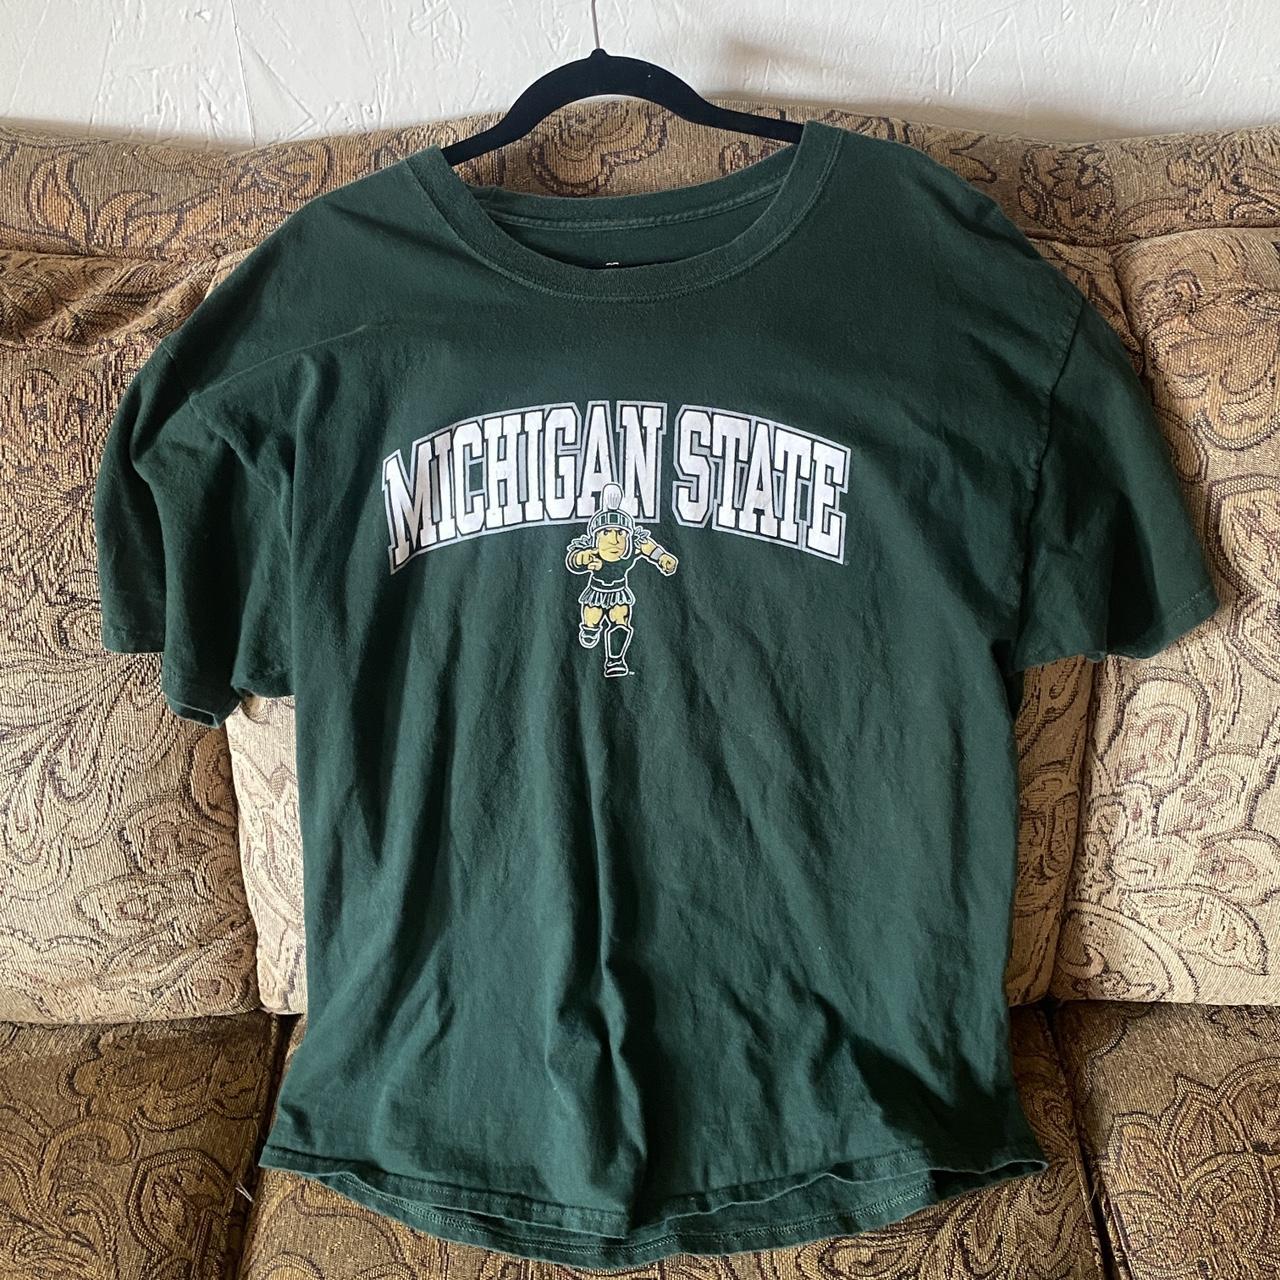 Vintage Michigan State T-Shirt - Depop